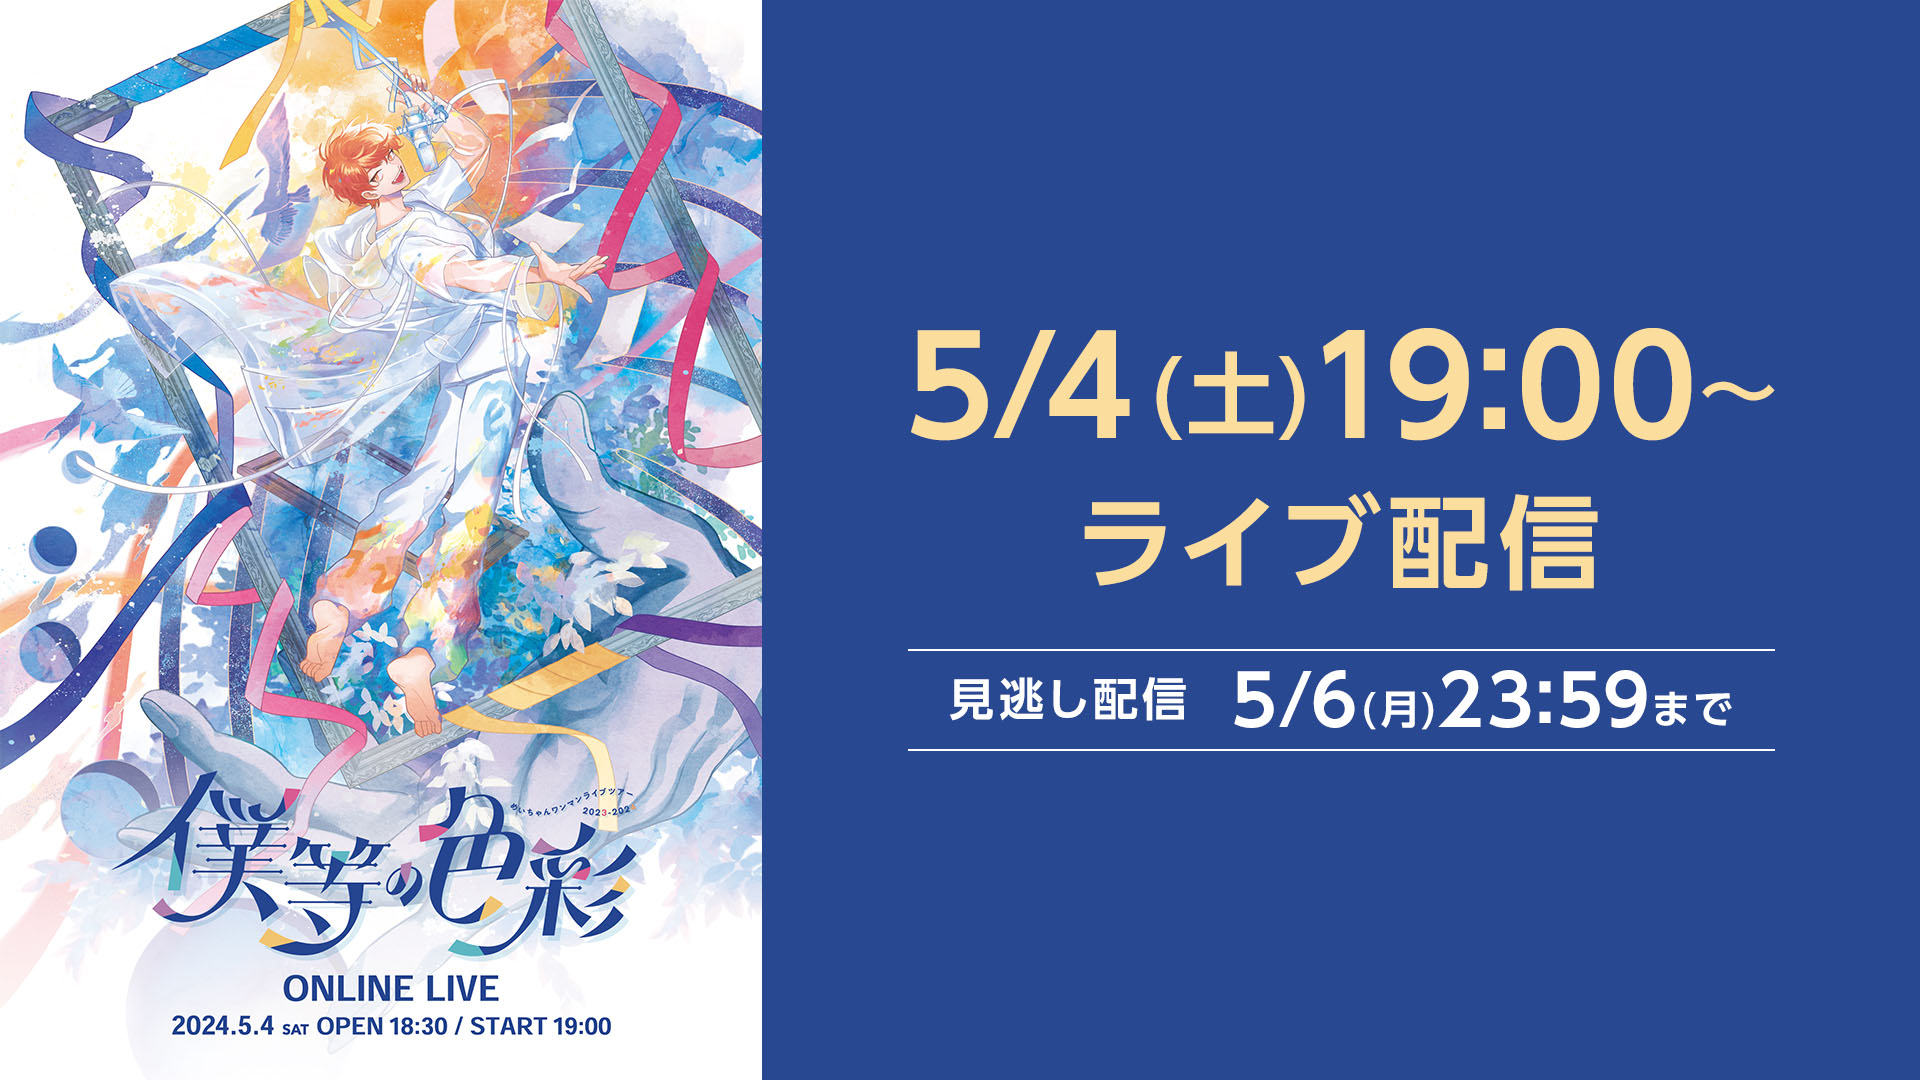 めいちゃんワンマン ONLINE LIVE「僕等の色彩」